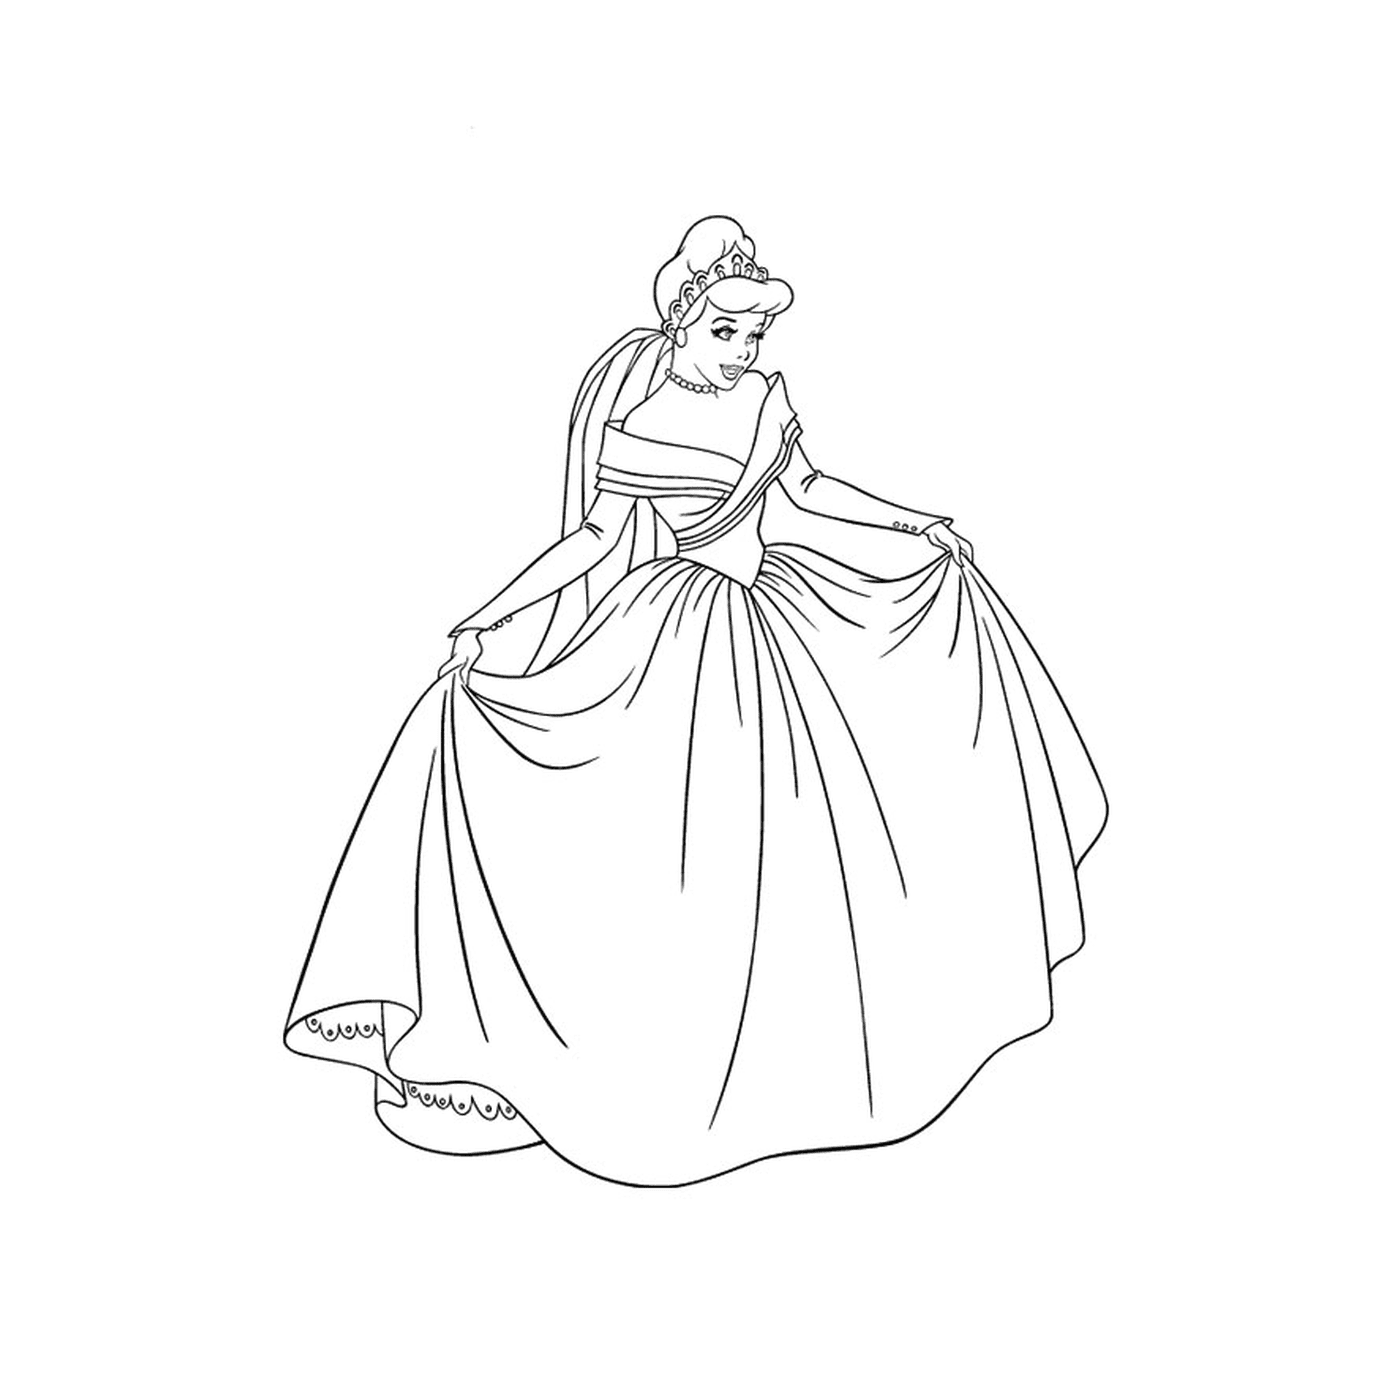  princesa elegante no vestido 